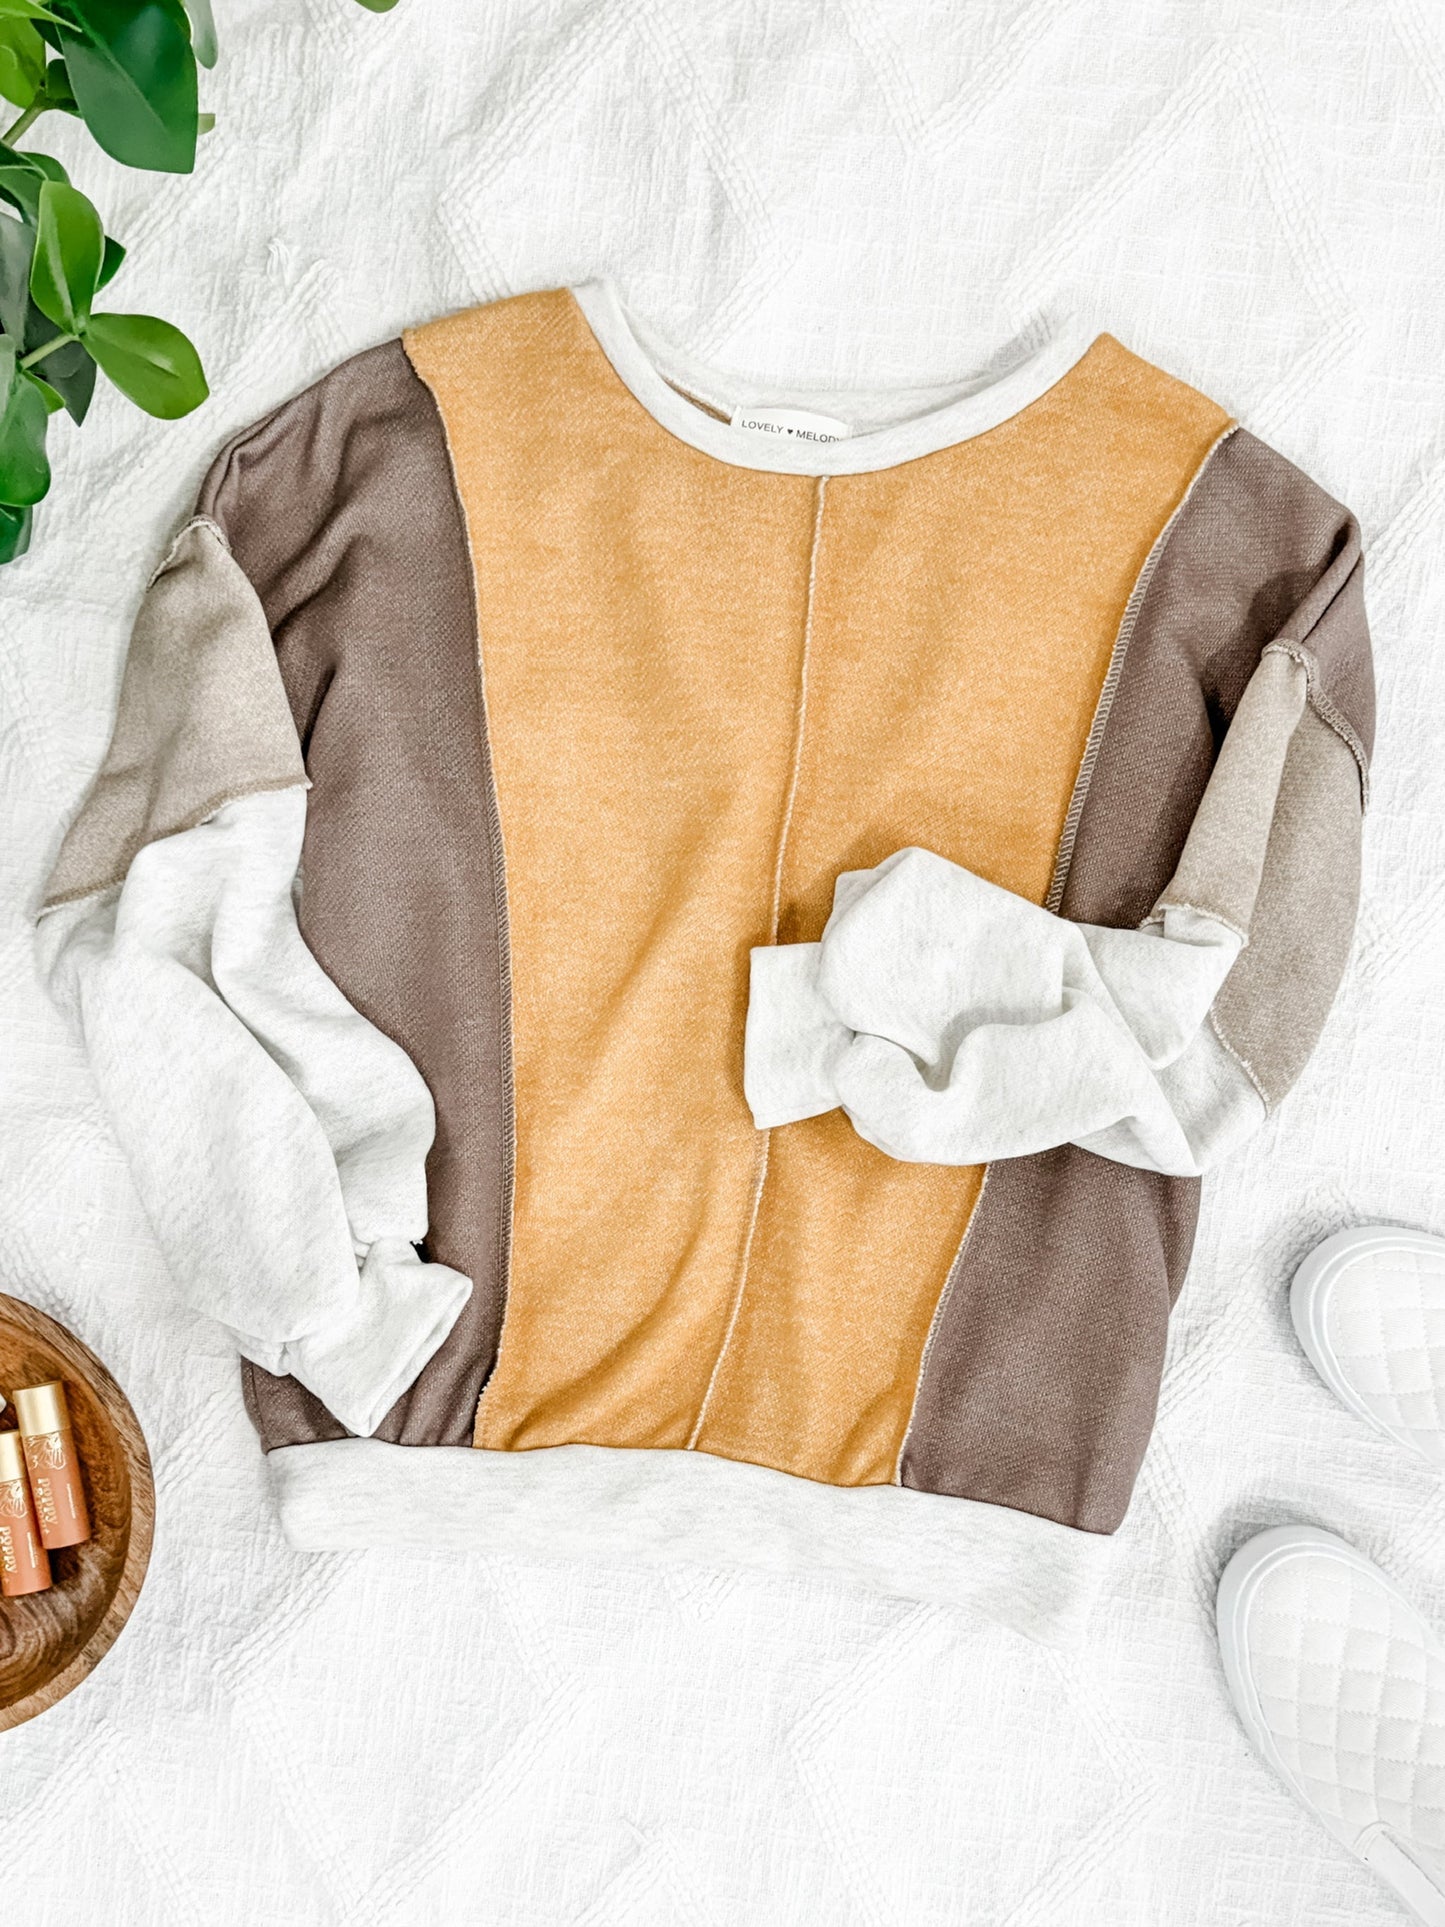 1.08 Contrasting Sleeve Sweatshirt Top  In 70's Color Block American Boutique Drop Ship